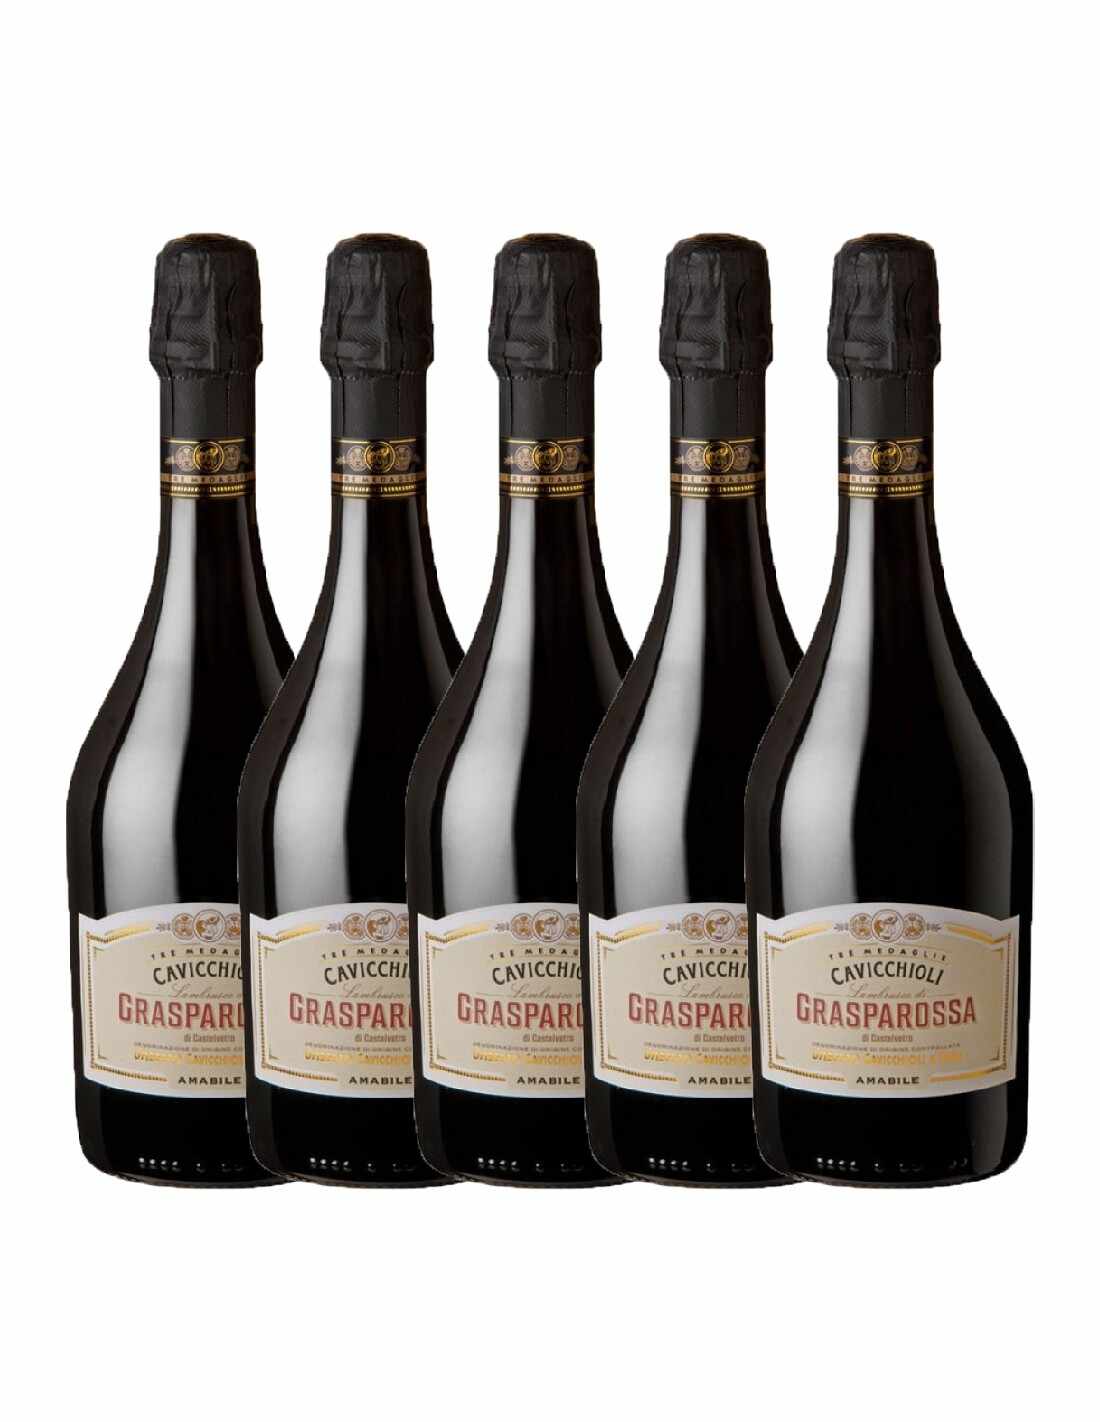 Pachet 5 sticle Vin frizzante rosu Cavicchioli Grasparossa Amabile, 8% alc., 0.75L, Italia